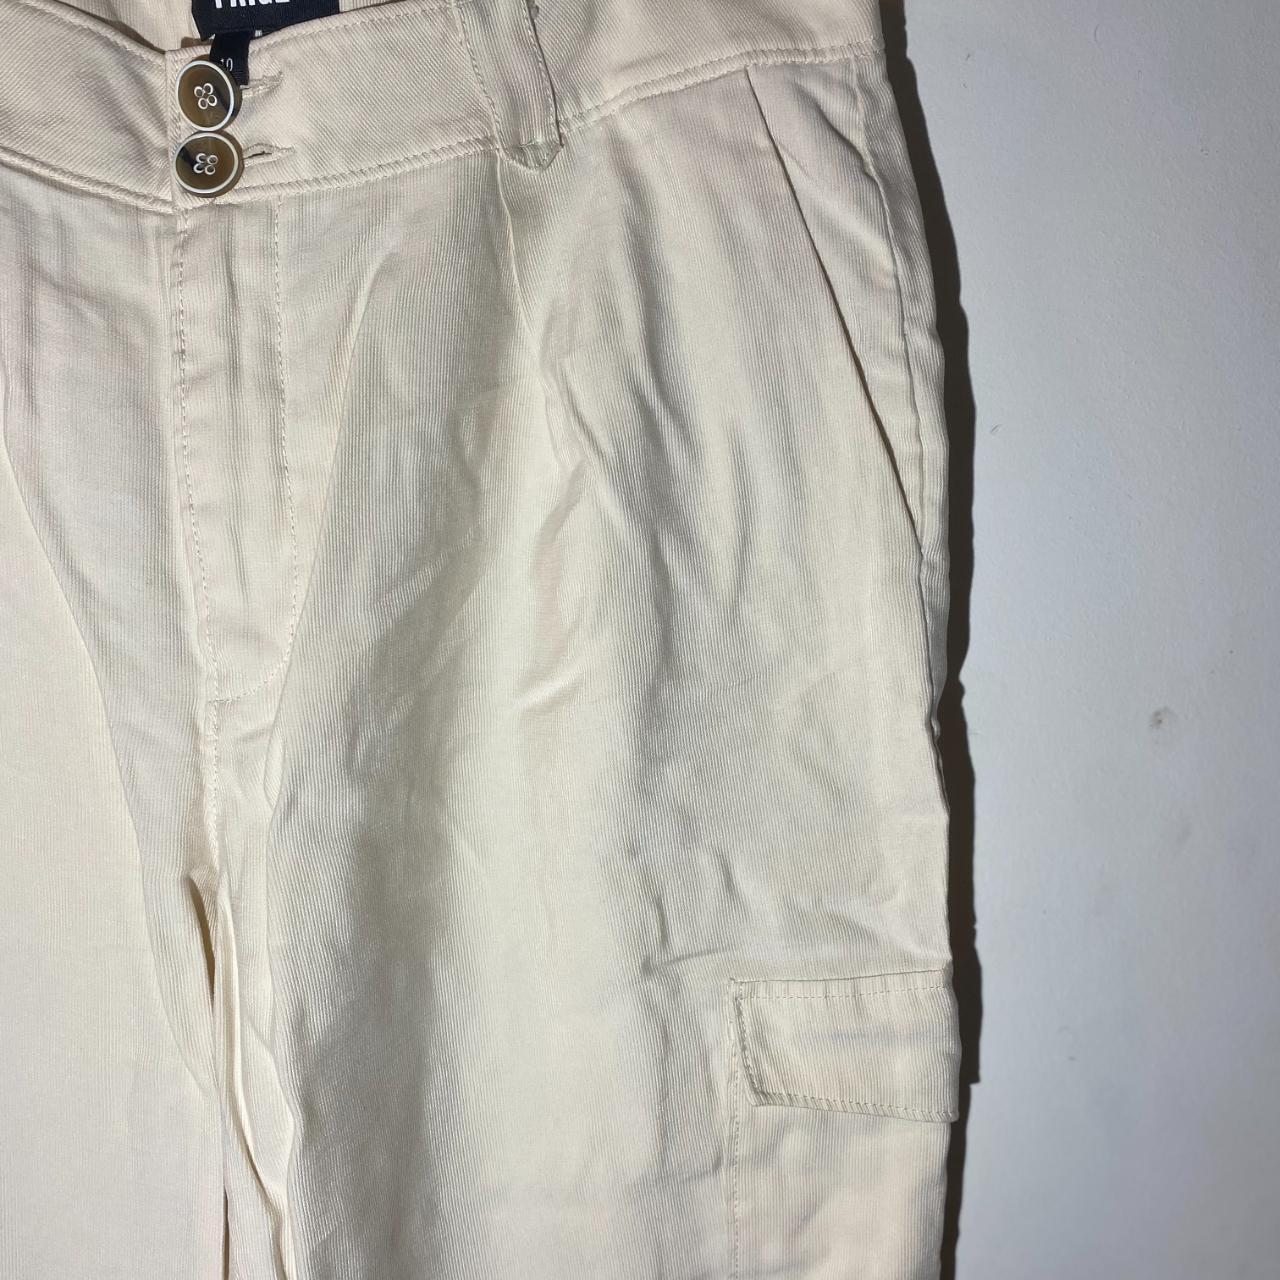 size 10 white/ eggshell/ cream cargo pants - Depop